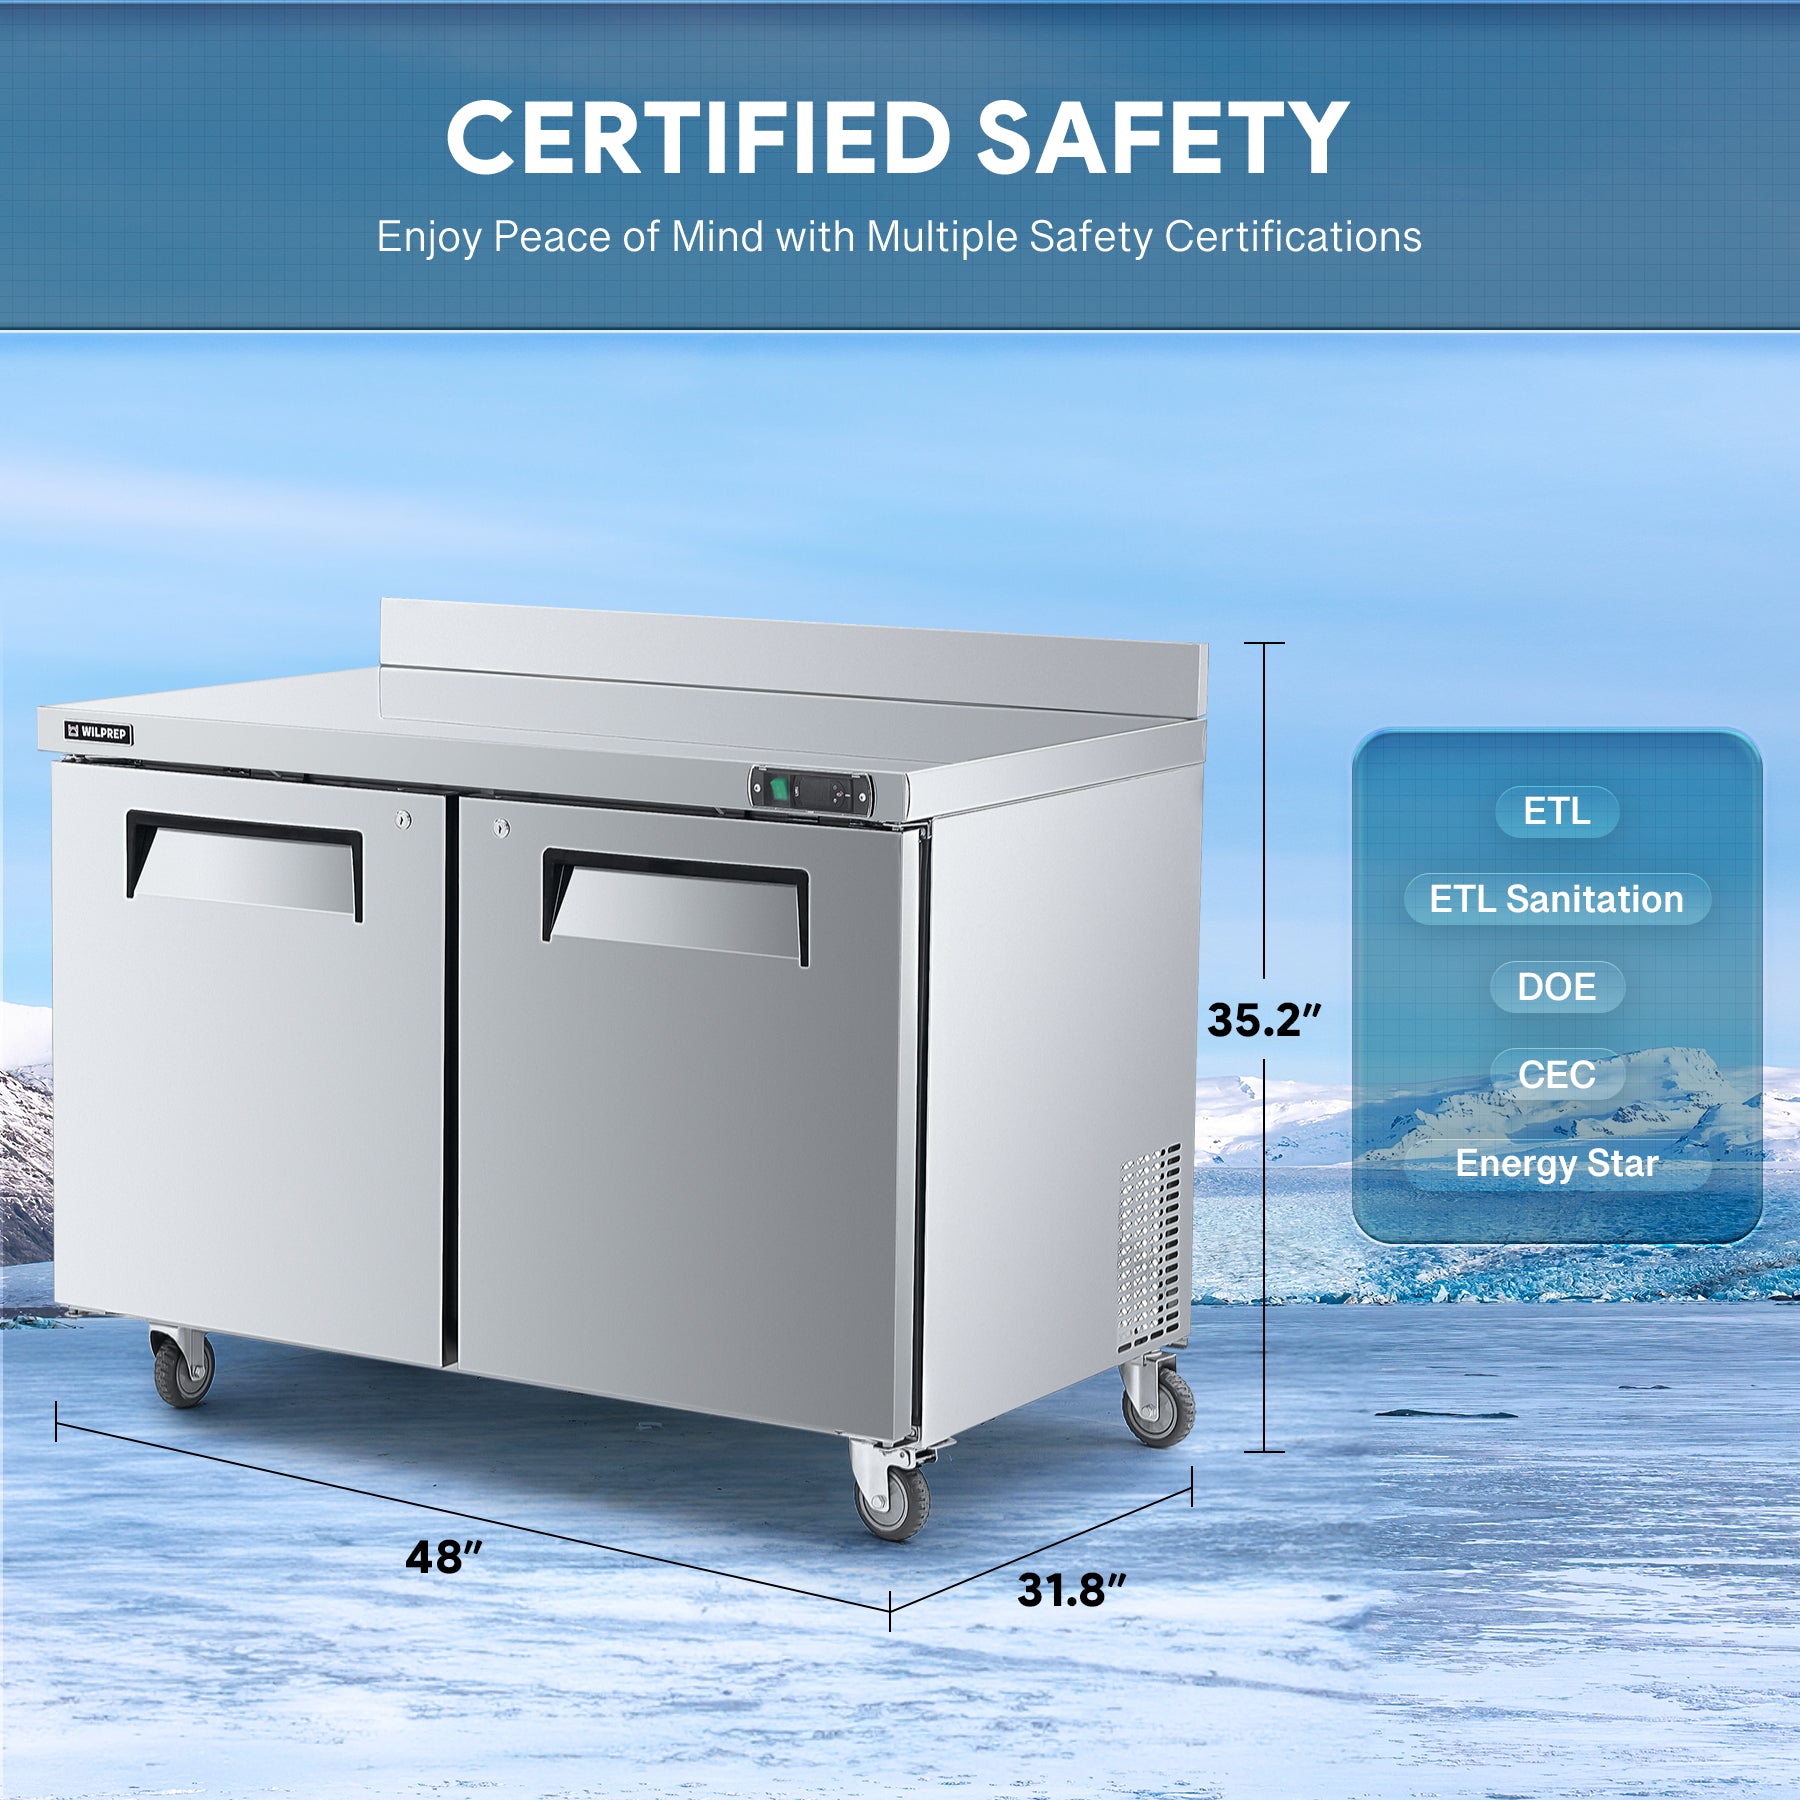 Wilprep 48 inch undercounter worktop refrigerator etl safety